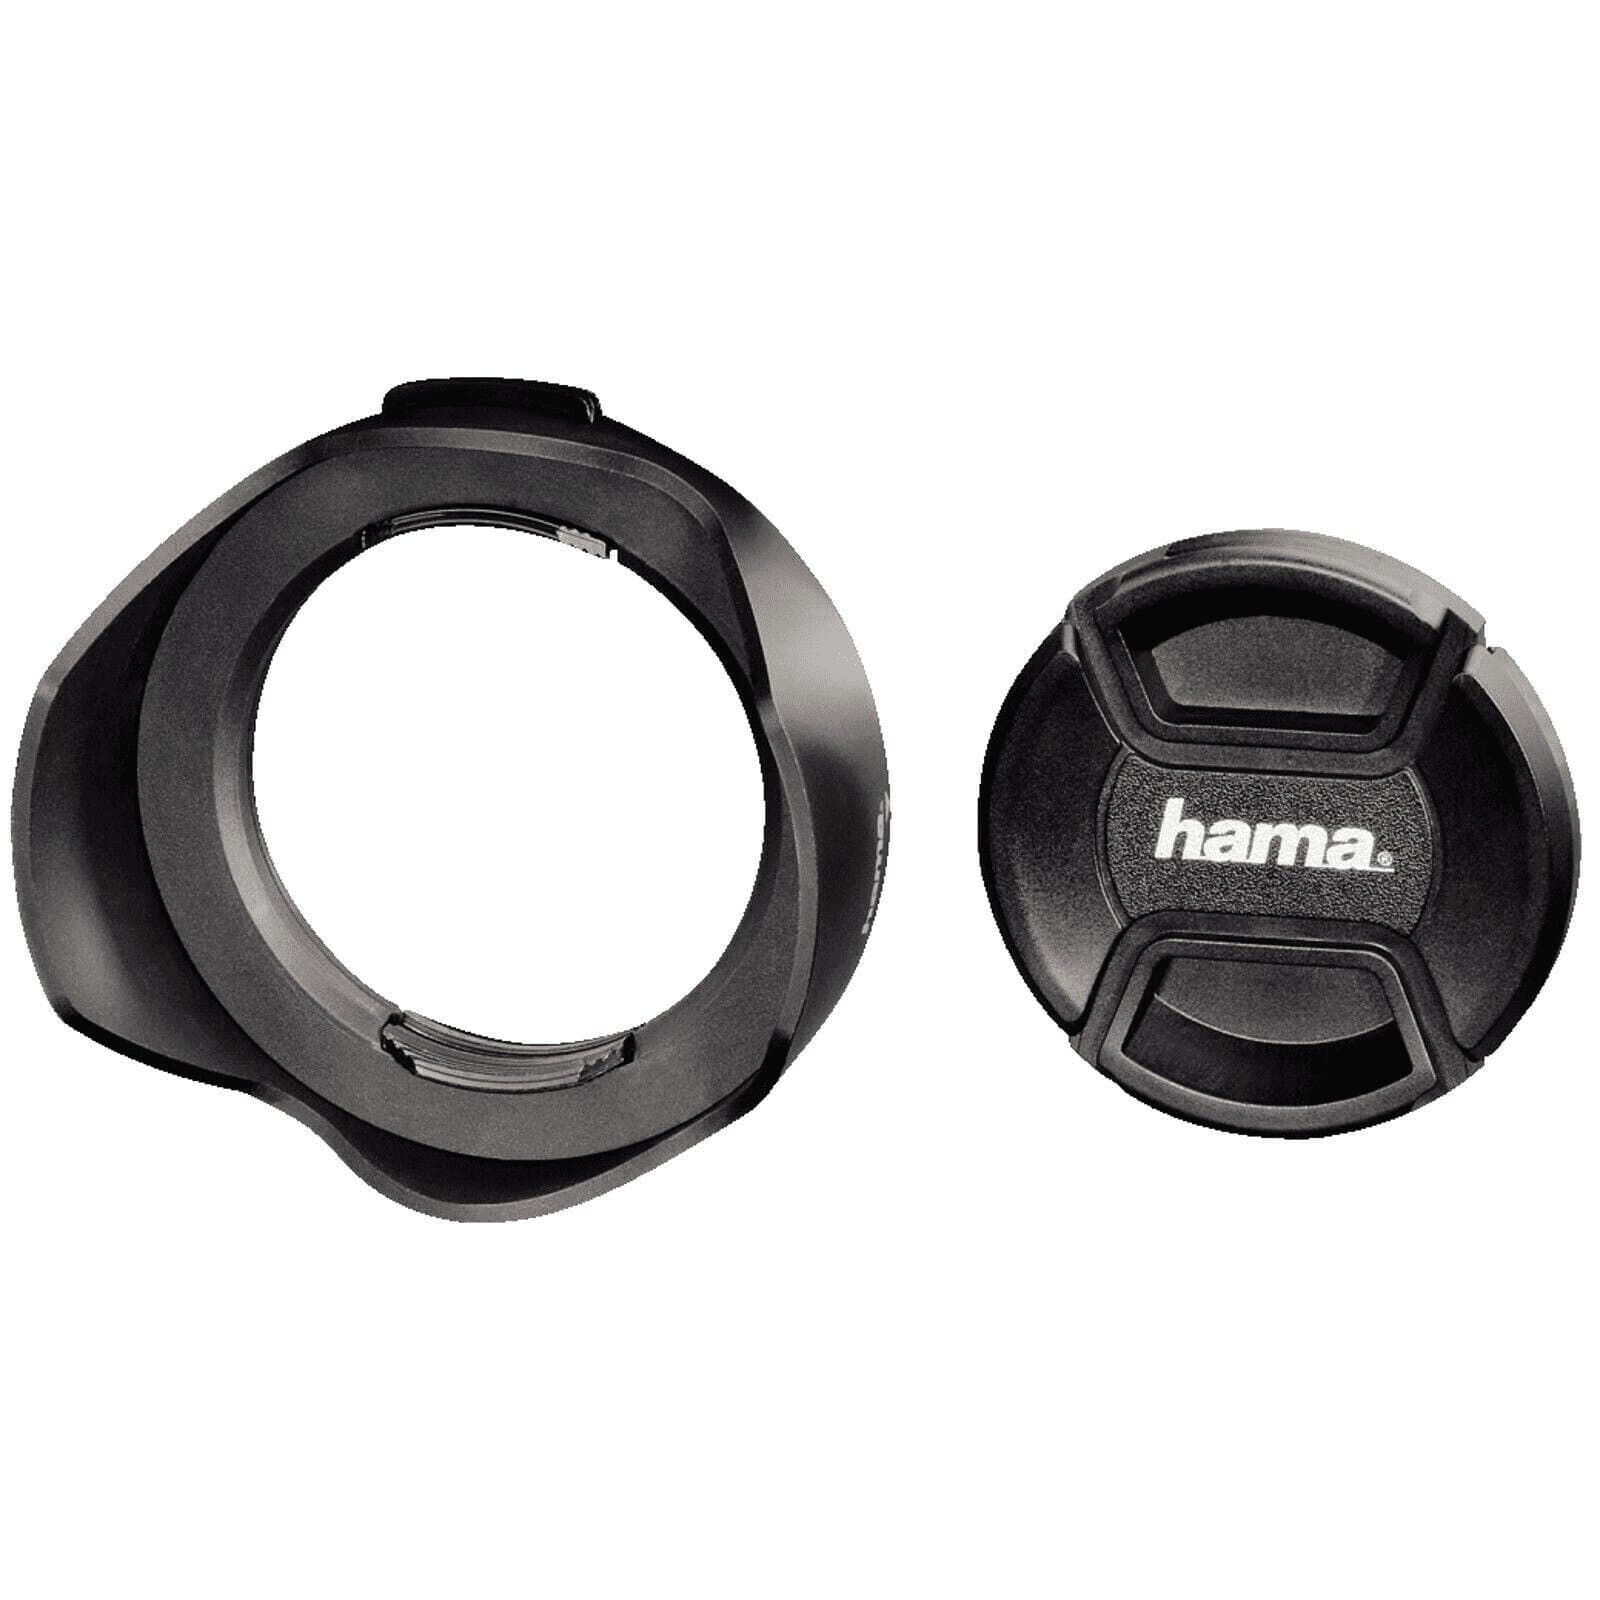 Hama Gegenlichtblende universal mit Objektivdeckel 72mm